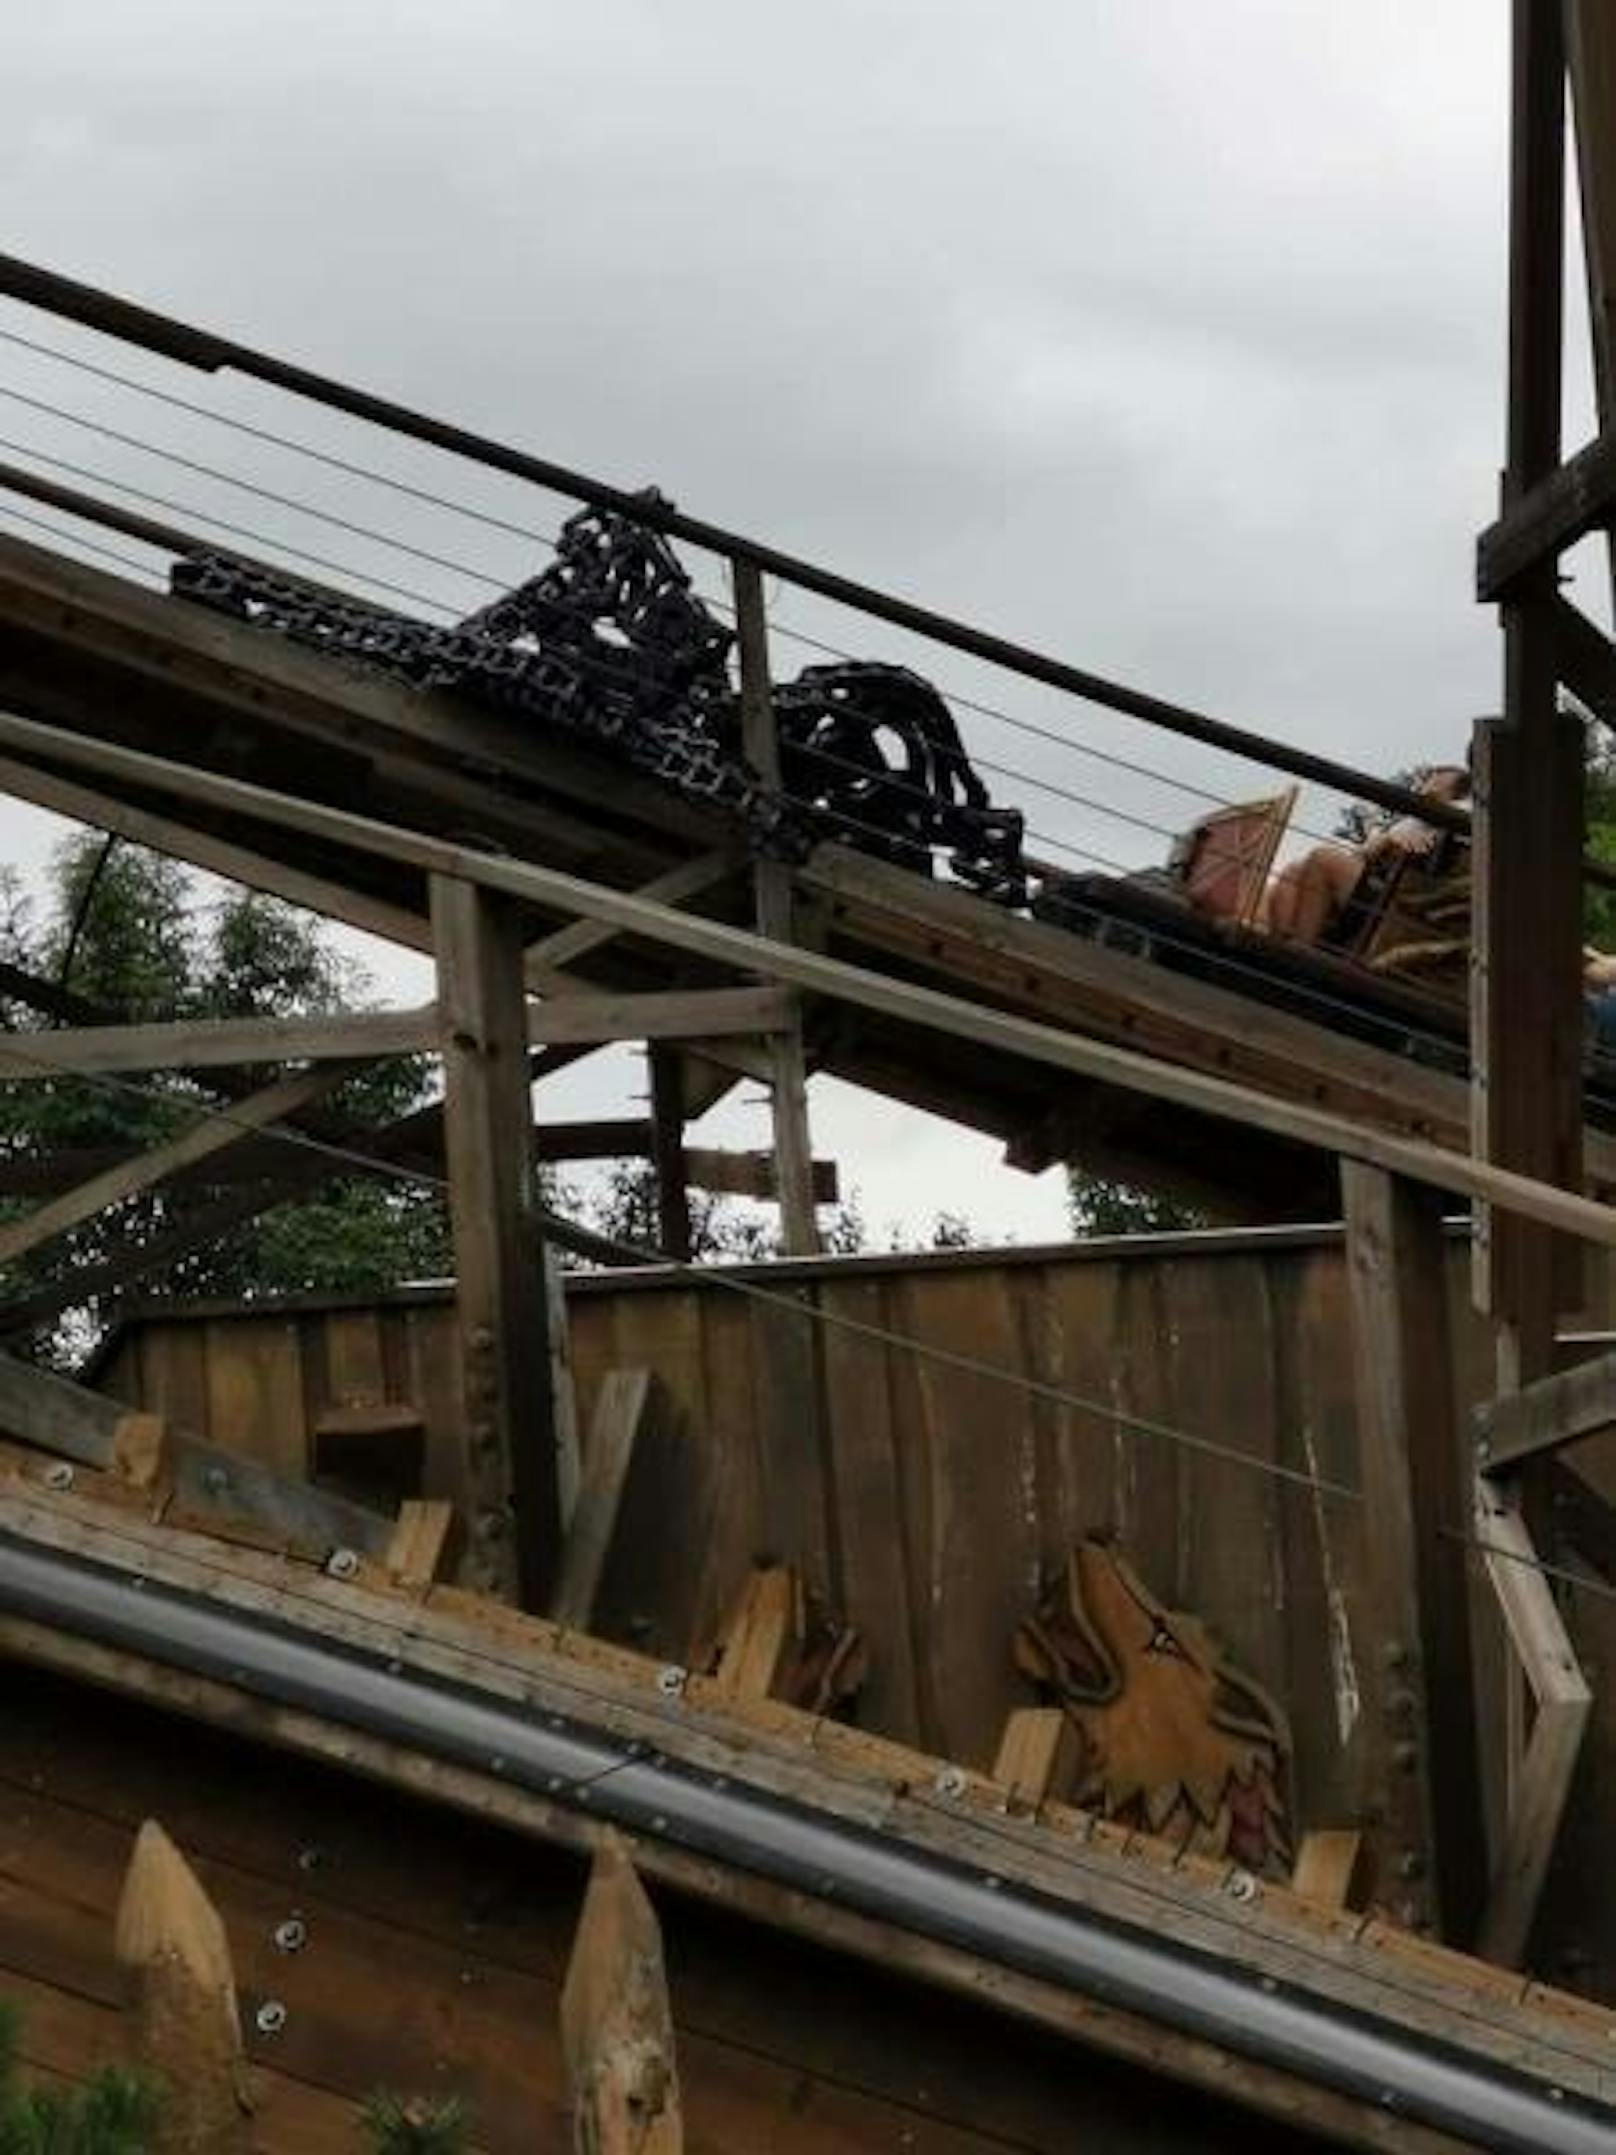 Bei der Holzachterbahn Wodan im Europa-Park ist am Dienstag eine Stahlkette, welche die Wagen nach oben zieht, gerissen.